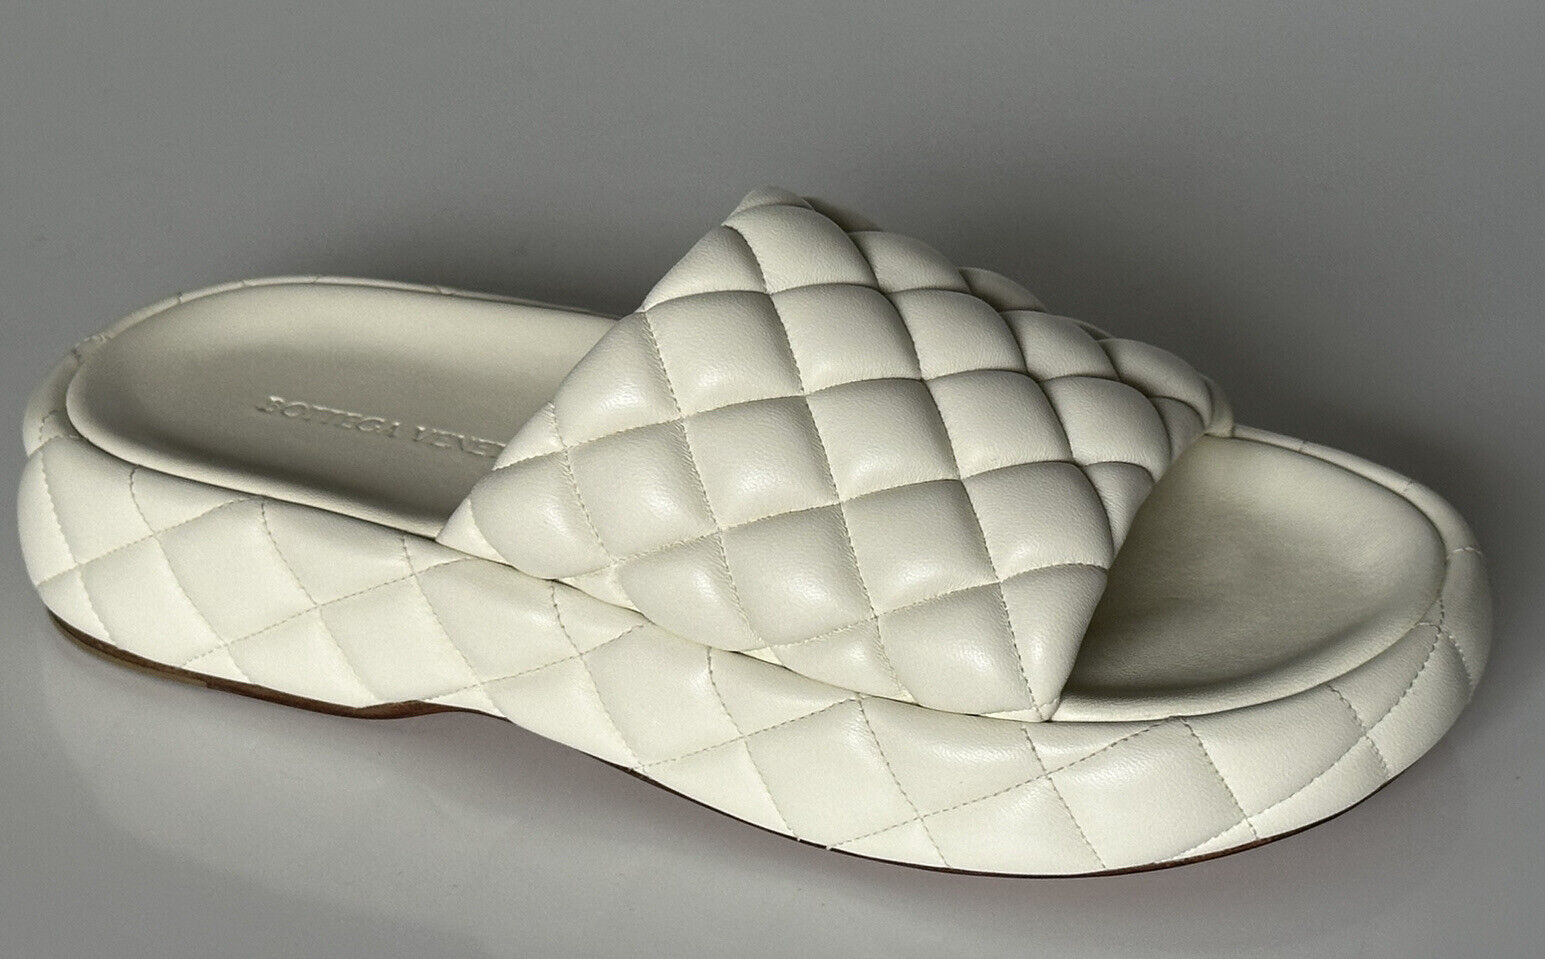 NIB Белые кожаные стеганые сандалии Bottega Veneta за 1450 долларов США 11 США 708885 IT